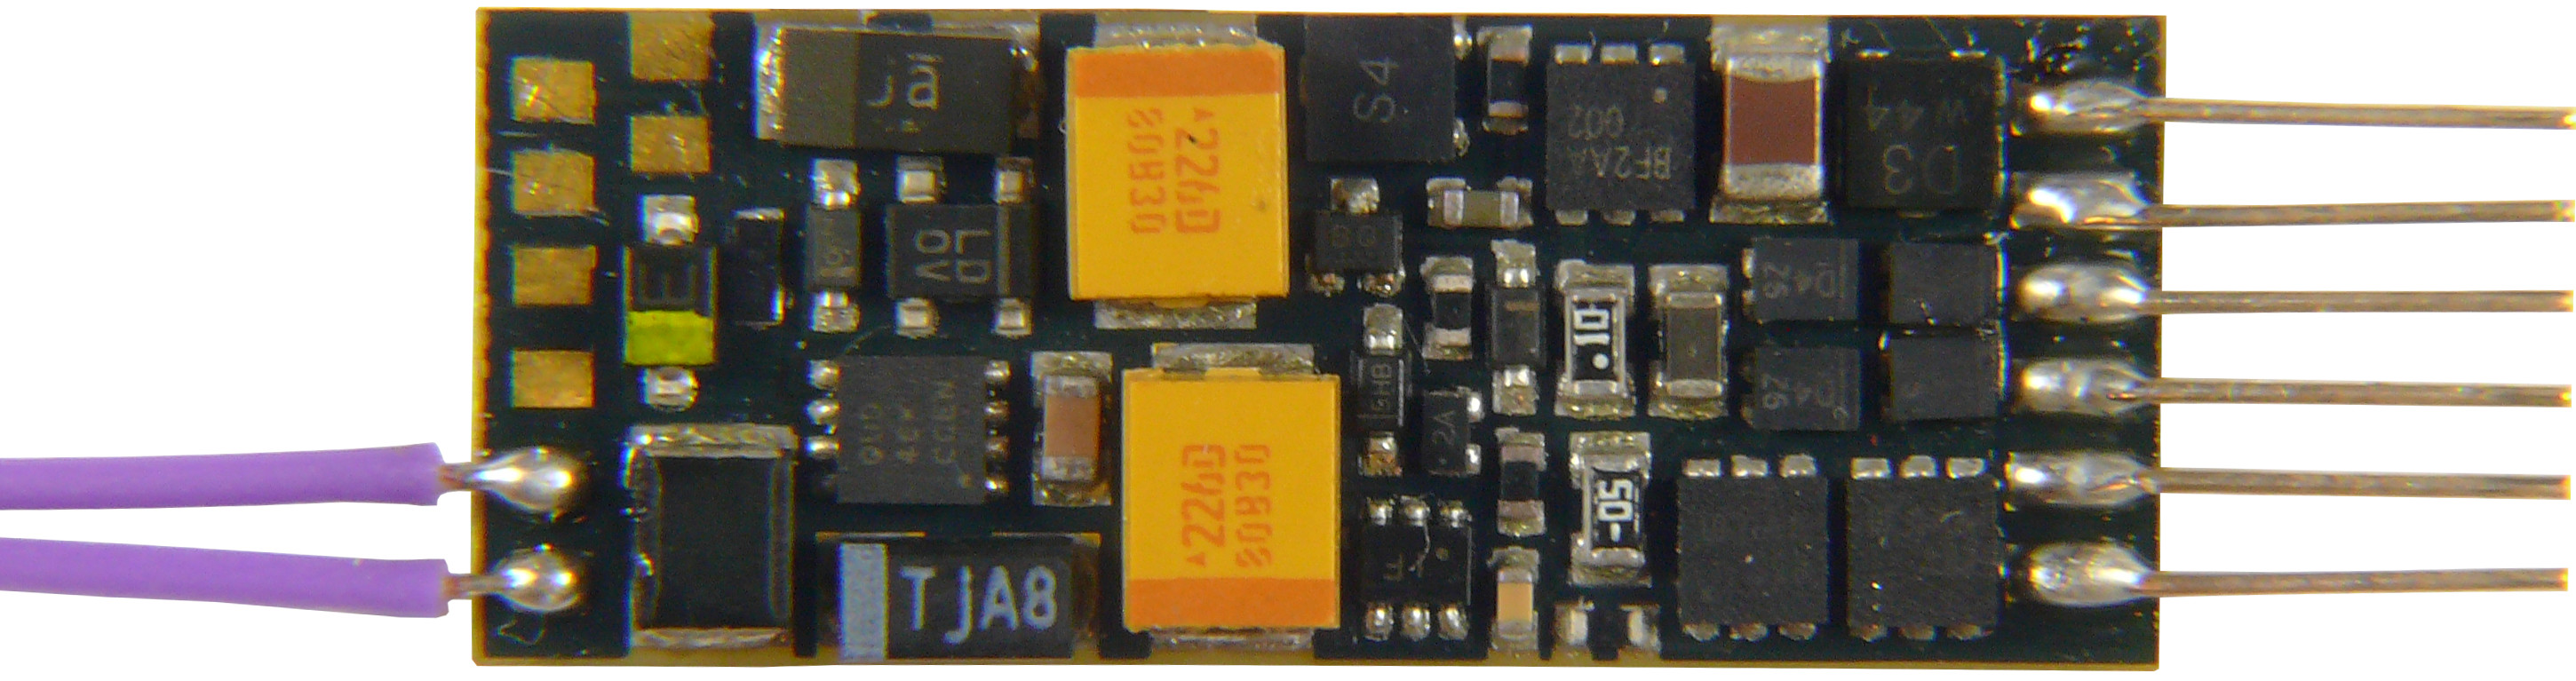 Zimo electrónica GmbH-mx616 miniatura descodificador 9 cables nuevo embalaje original 